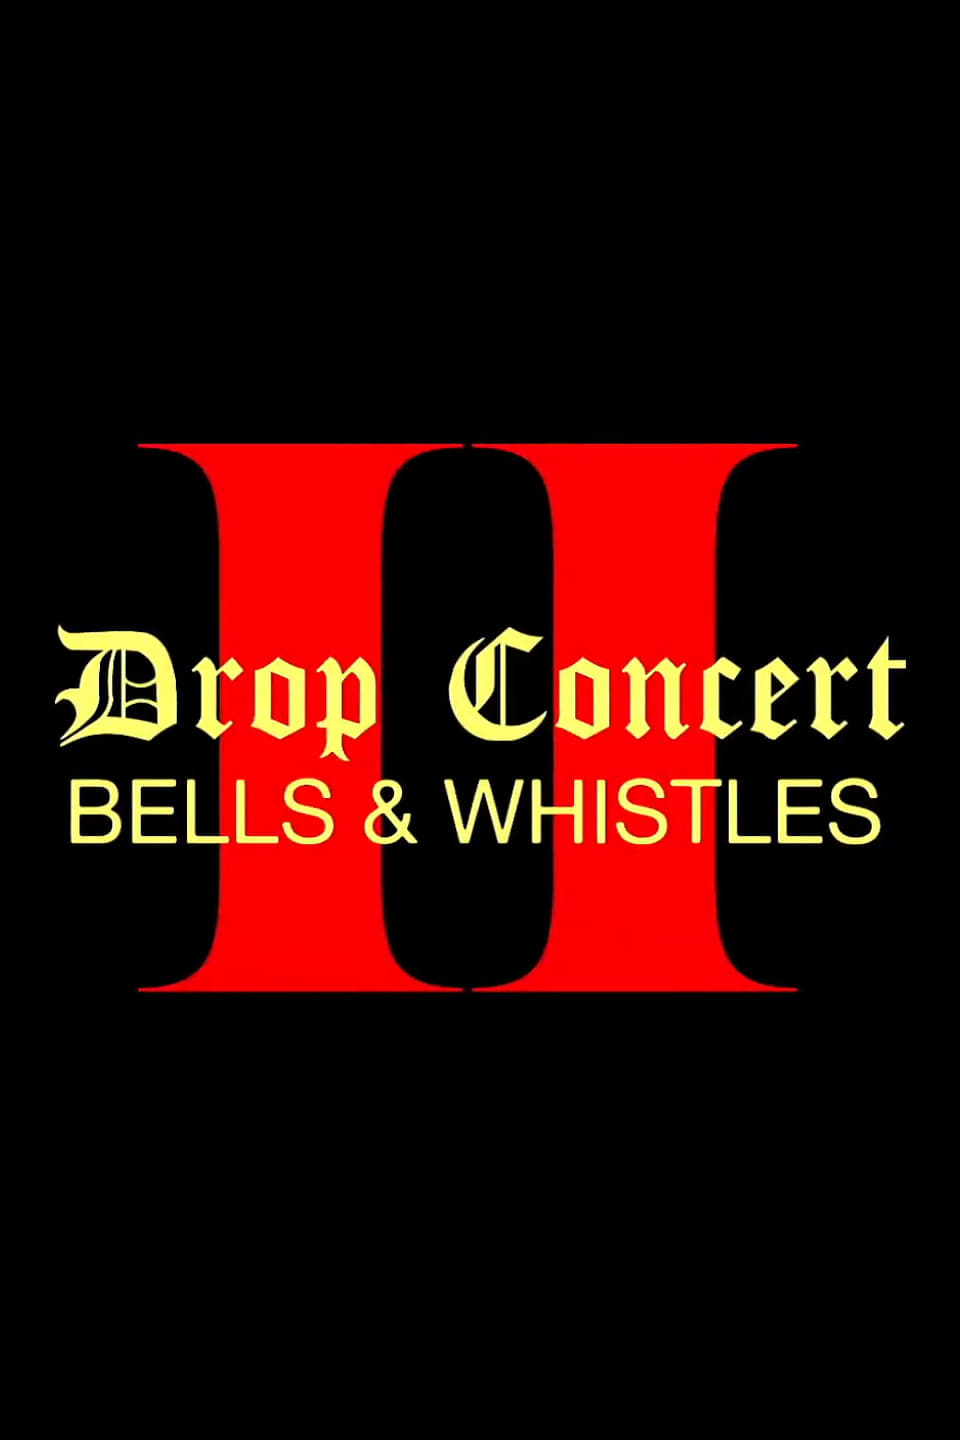 Drop Concert II: Bells & Whistles